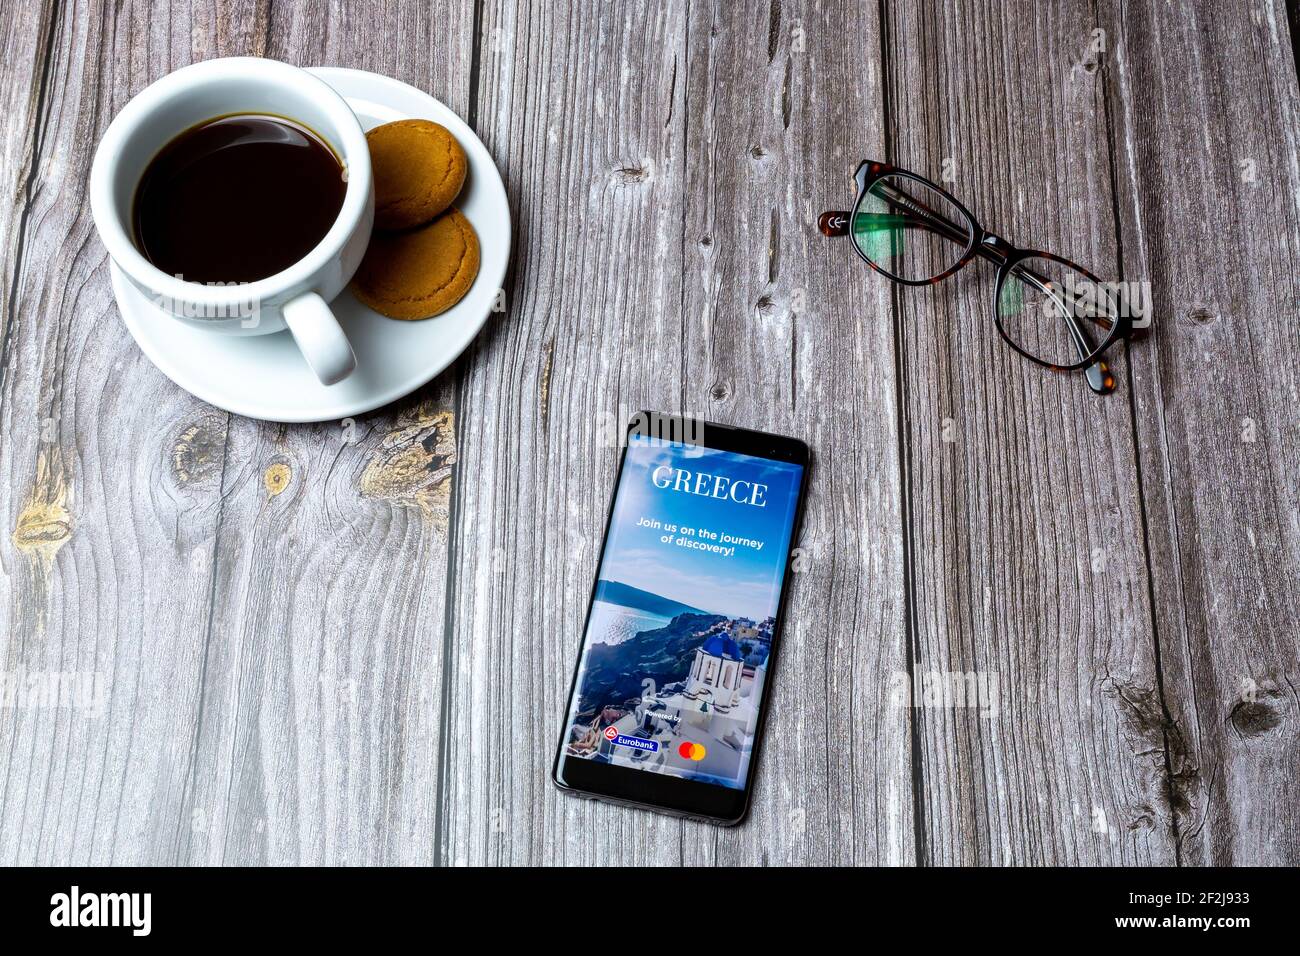 Ein Handy oder Handy auf einem Holz gelegt Tabelle mit der Visit Greece App auf dem Bildschirm geöffnet Stockfoto